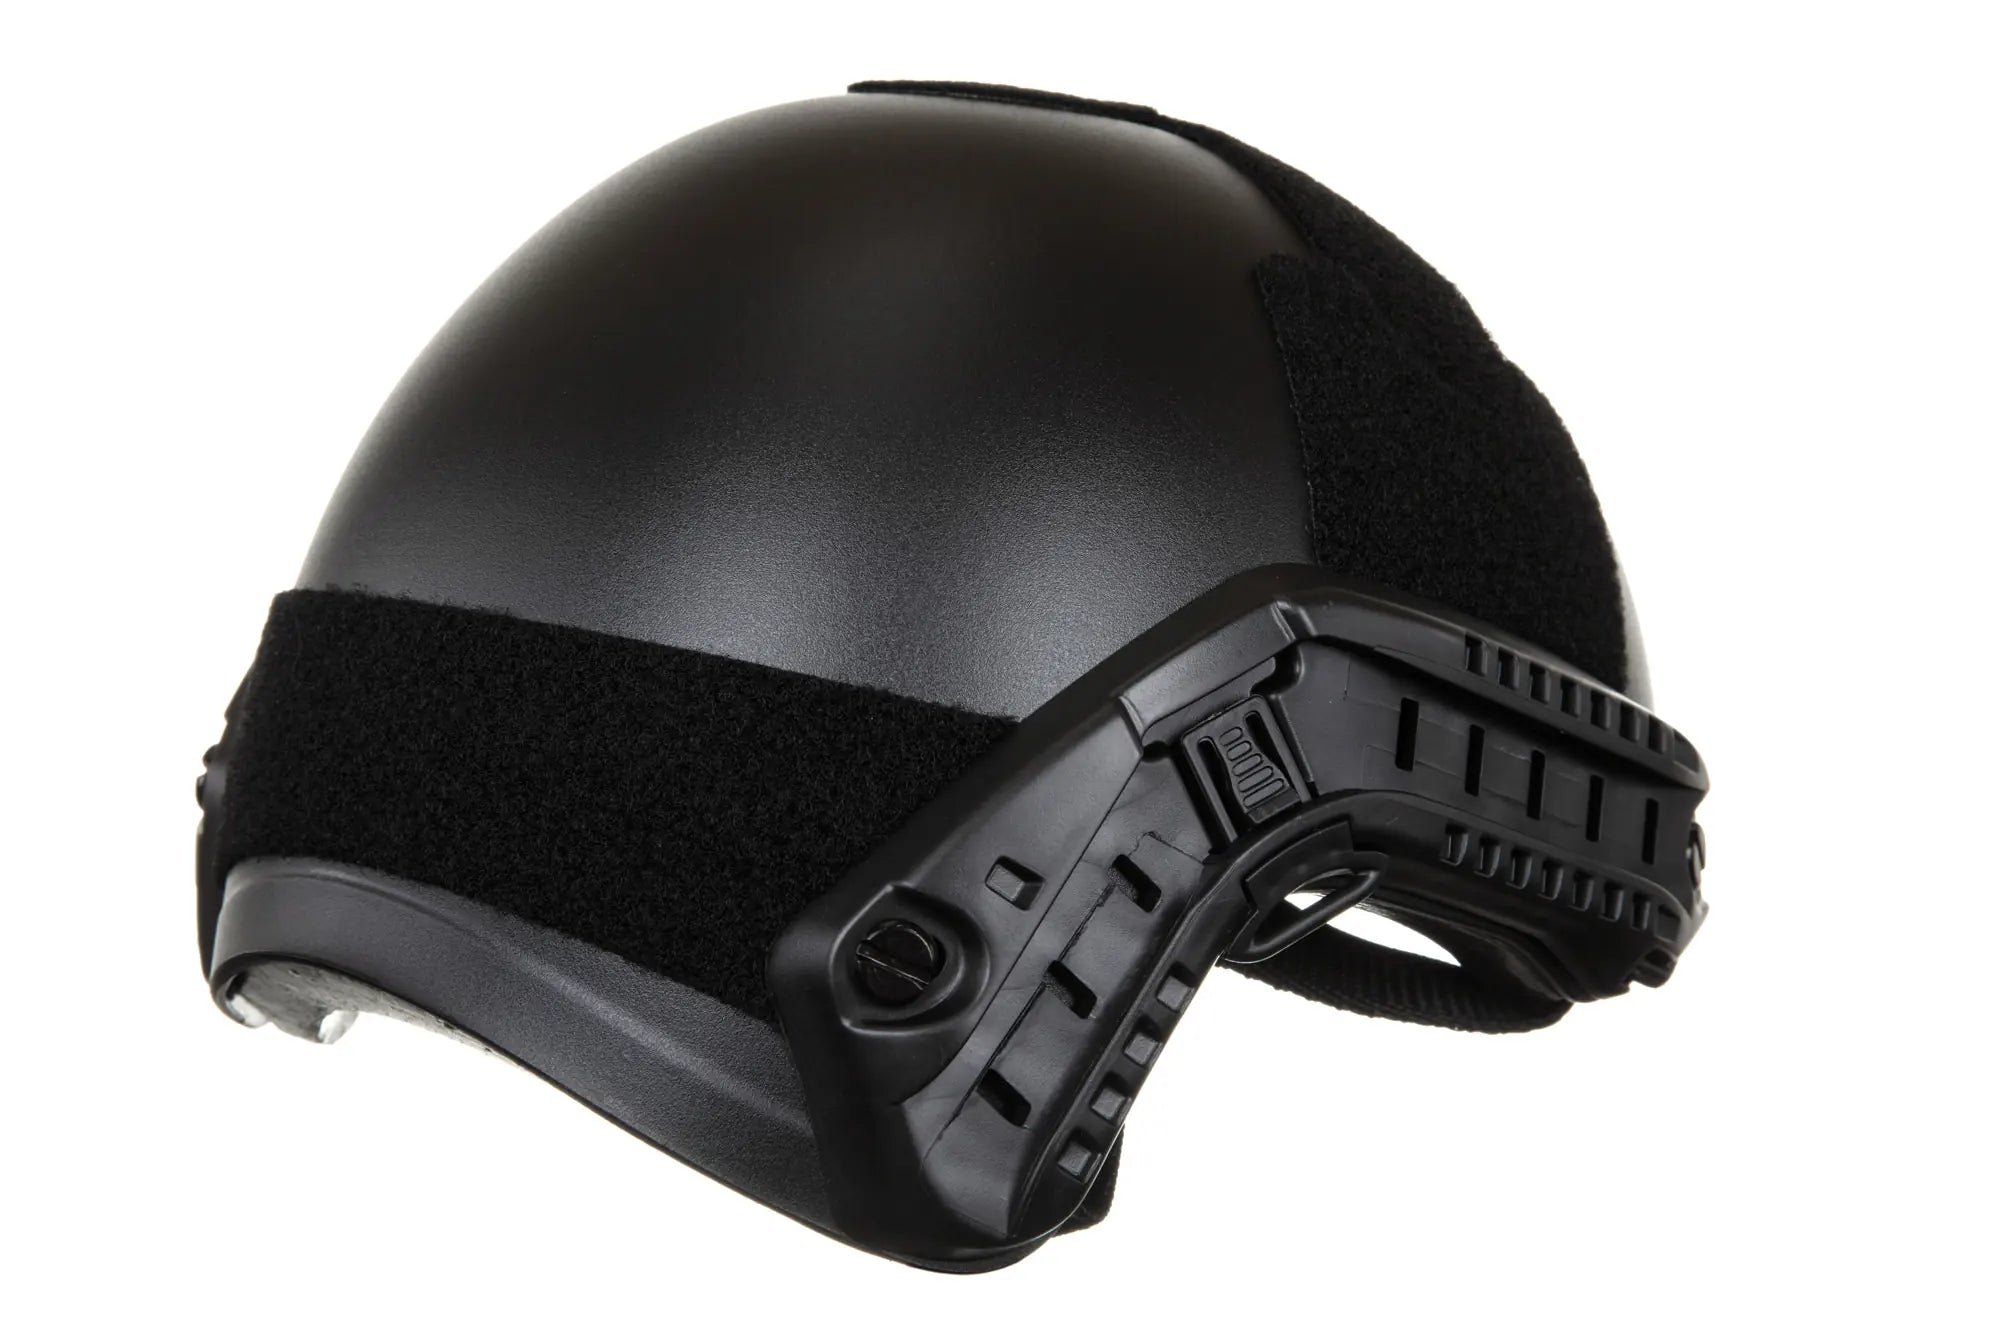 Emerson Gear Fast MH Eco helmet replica Black